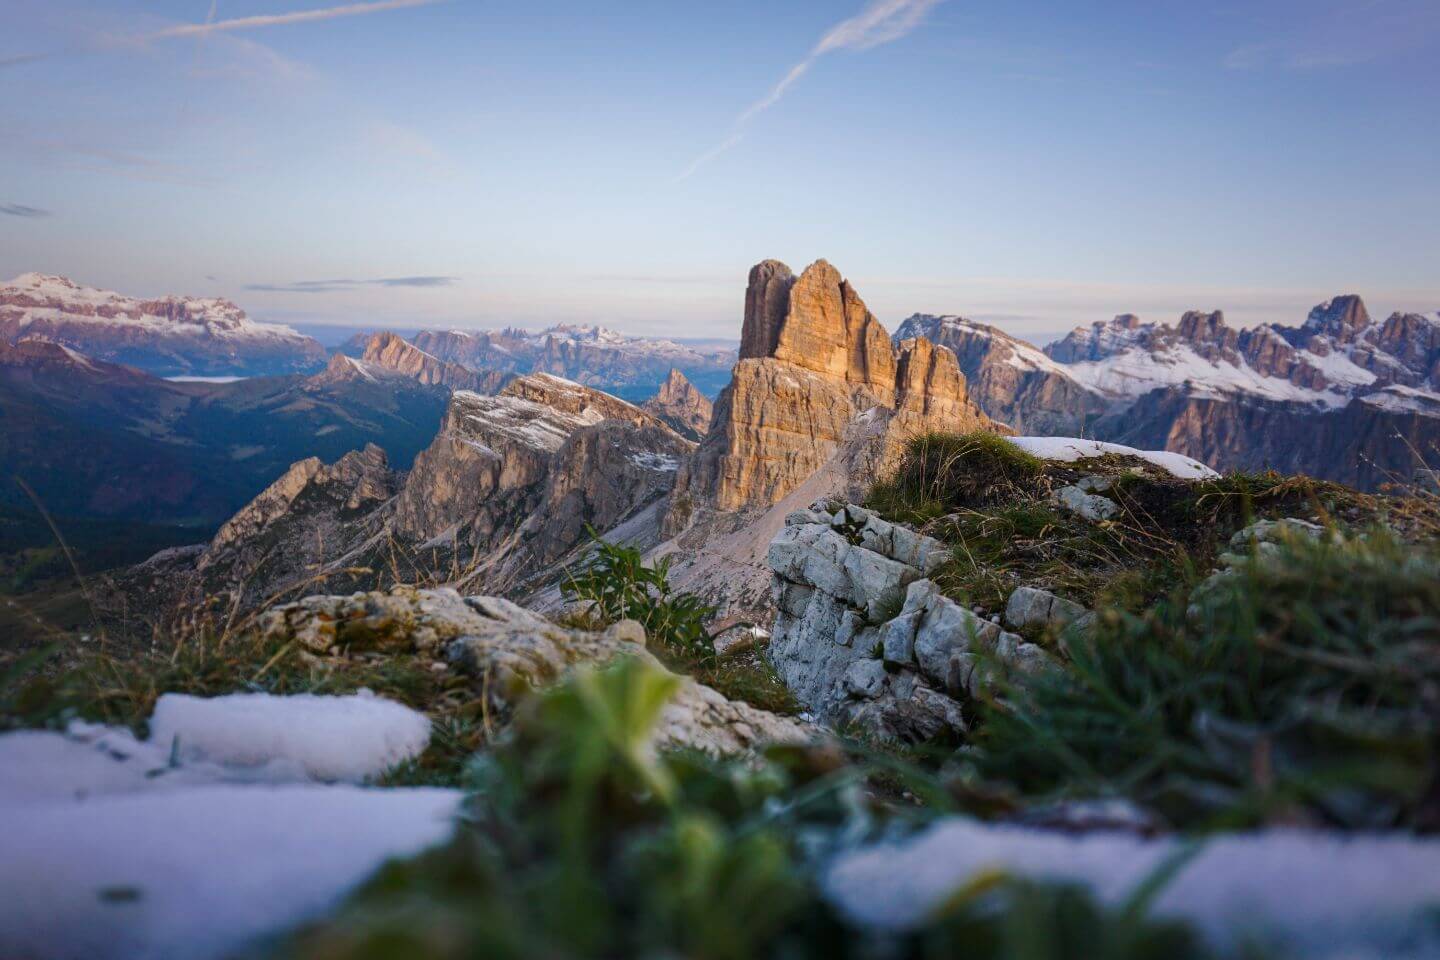 Alta Via 1, the Dolomites, Italy - Europe's Most Epic Mountain Hikes 